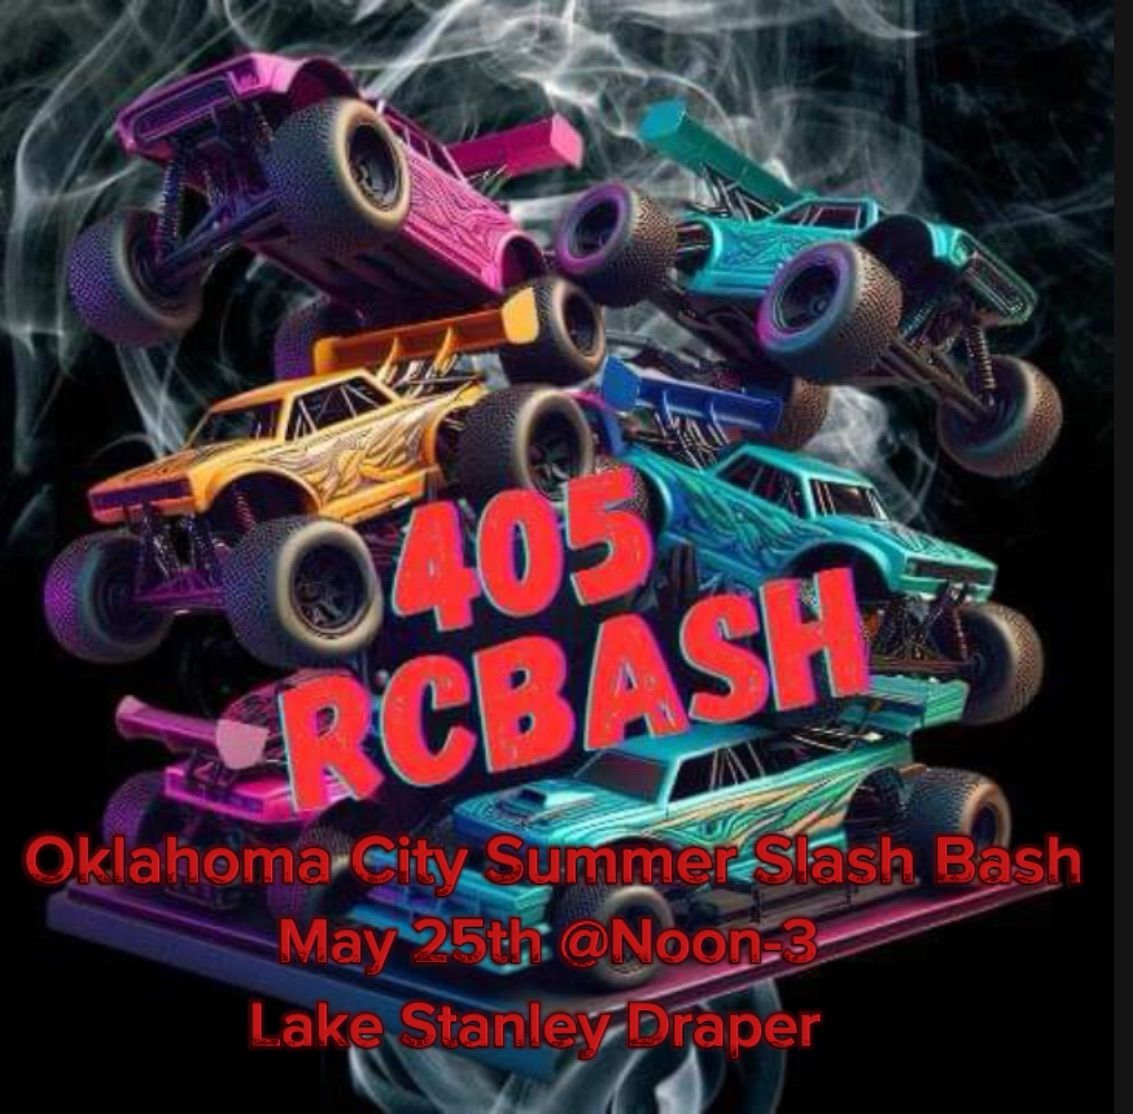 Oklahoma City Summer Slash Bash